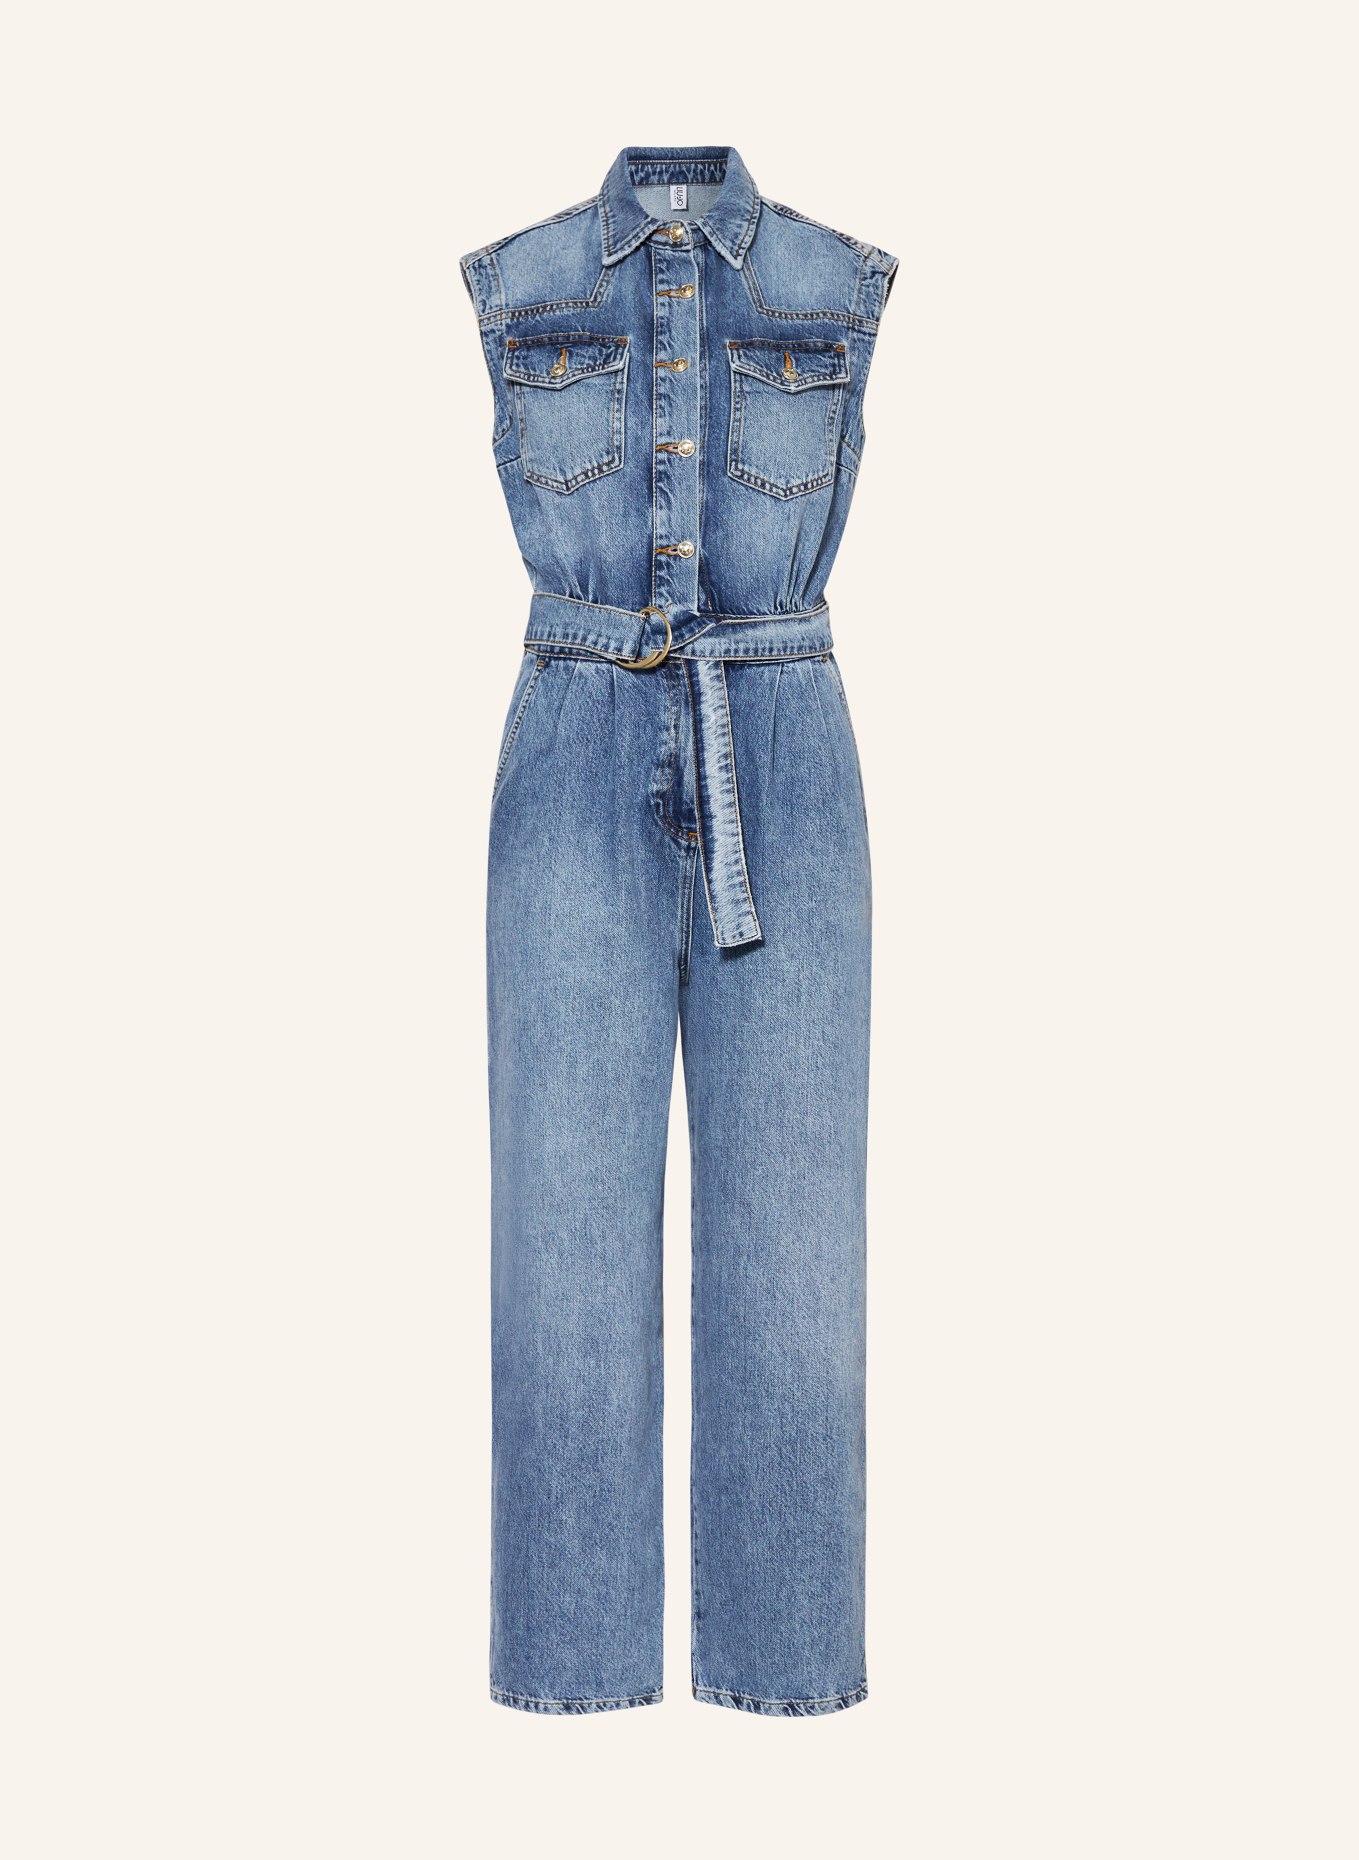 LIU JO Jeans jumpsuit, Color: BLUE (Image 1)